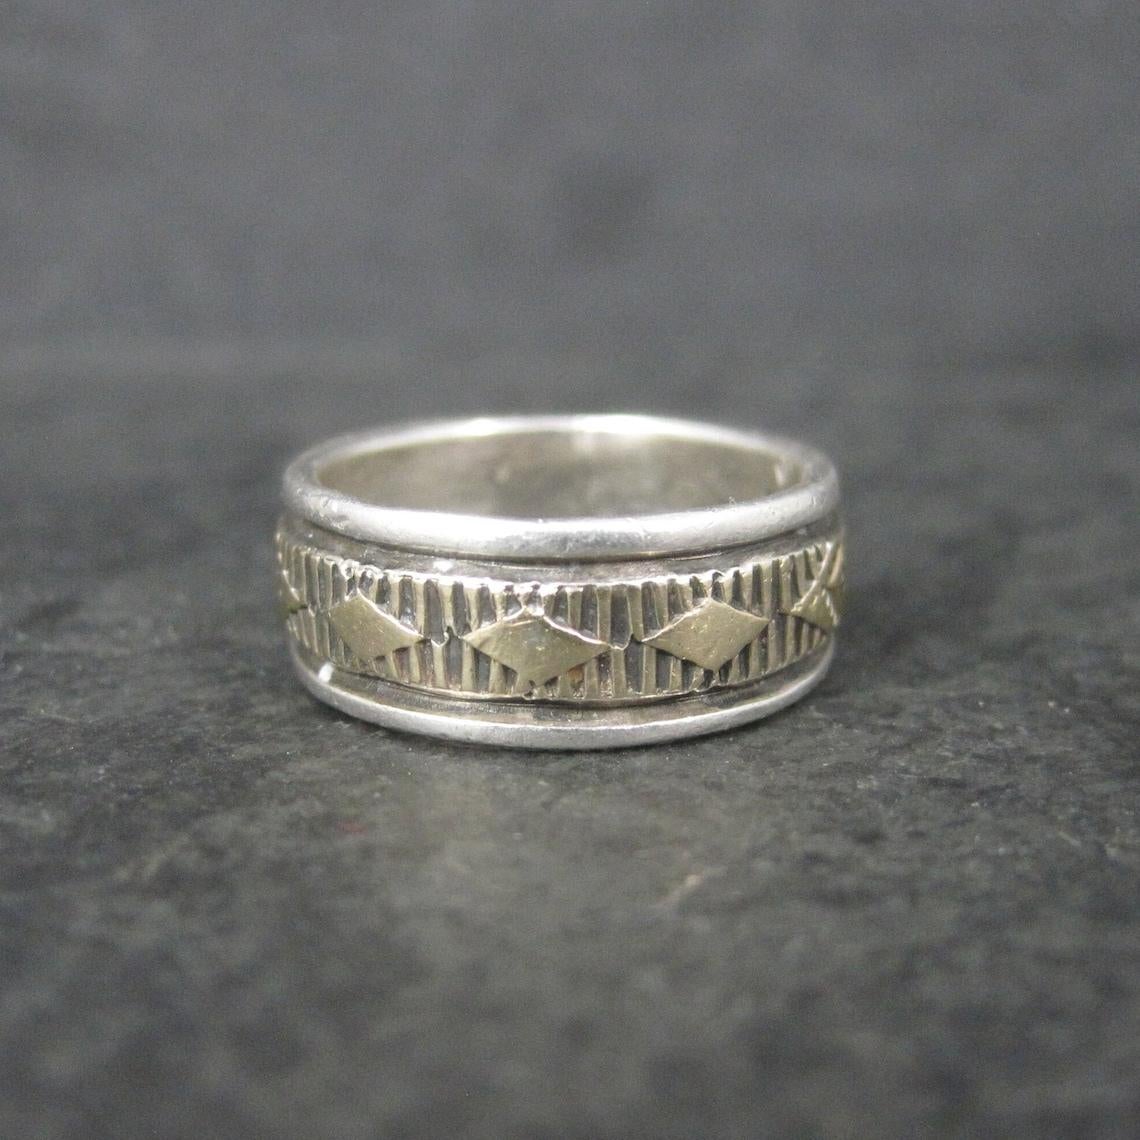 Dieser wunderschöne Ring im Vintage-Stil ist eine Kombination aus Sterlingsilber und 14 Karat Gelbgold.
Es ist eine Kreation des Navajo-Silberschmieds Bruce Morgan.

Abmessungen: 7,5 mm breit
Größe: 6,75, passt aber aufgrund der Breite eher wie eine